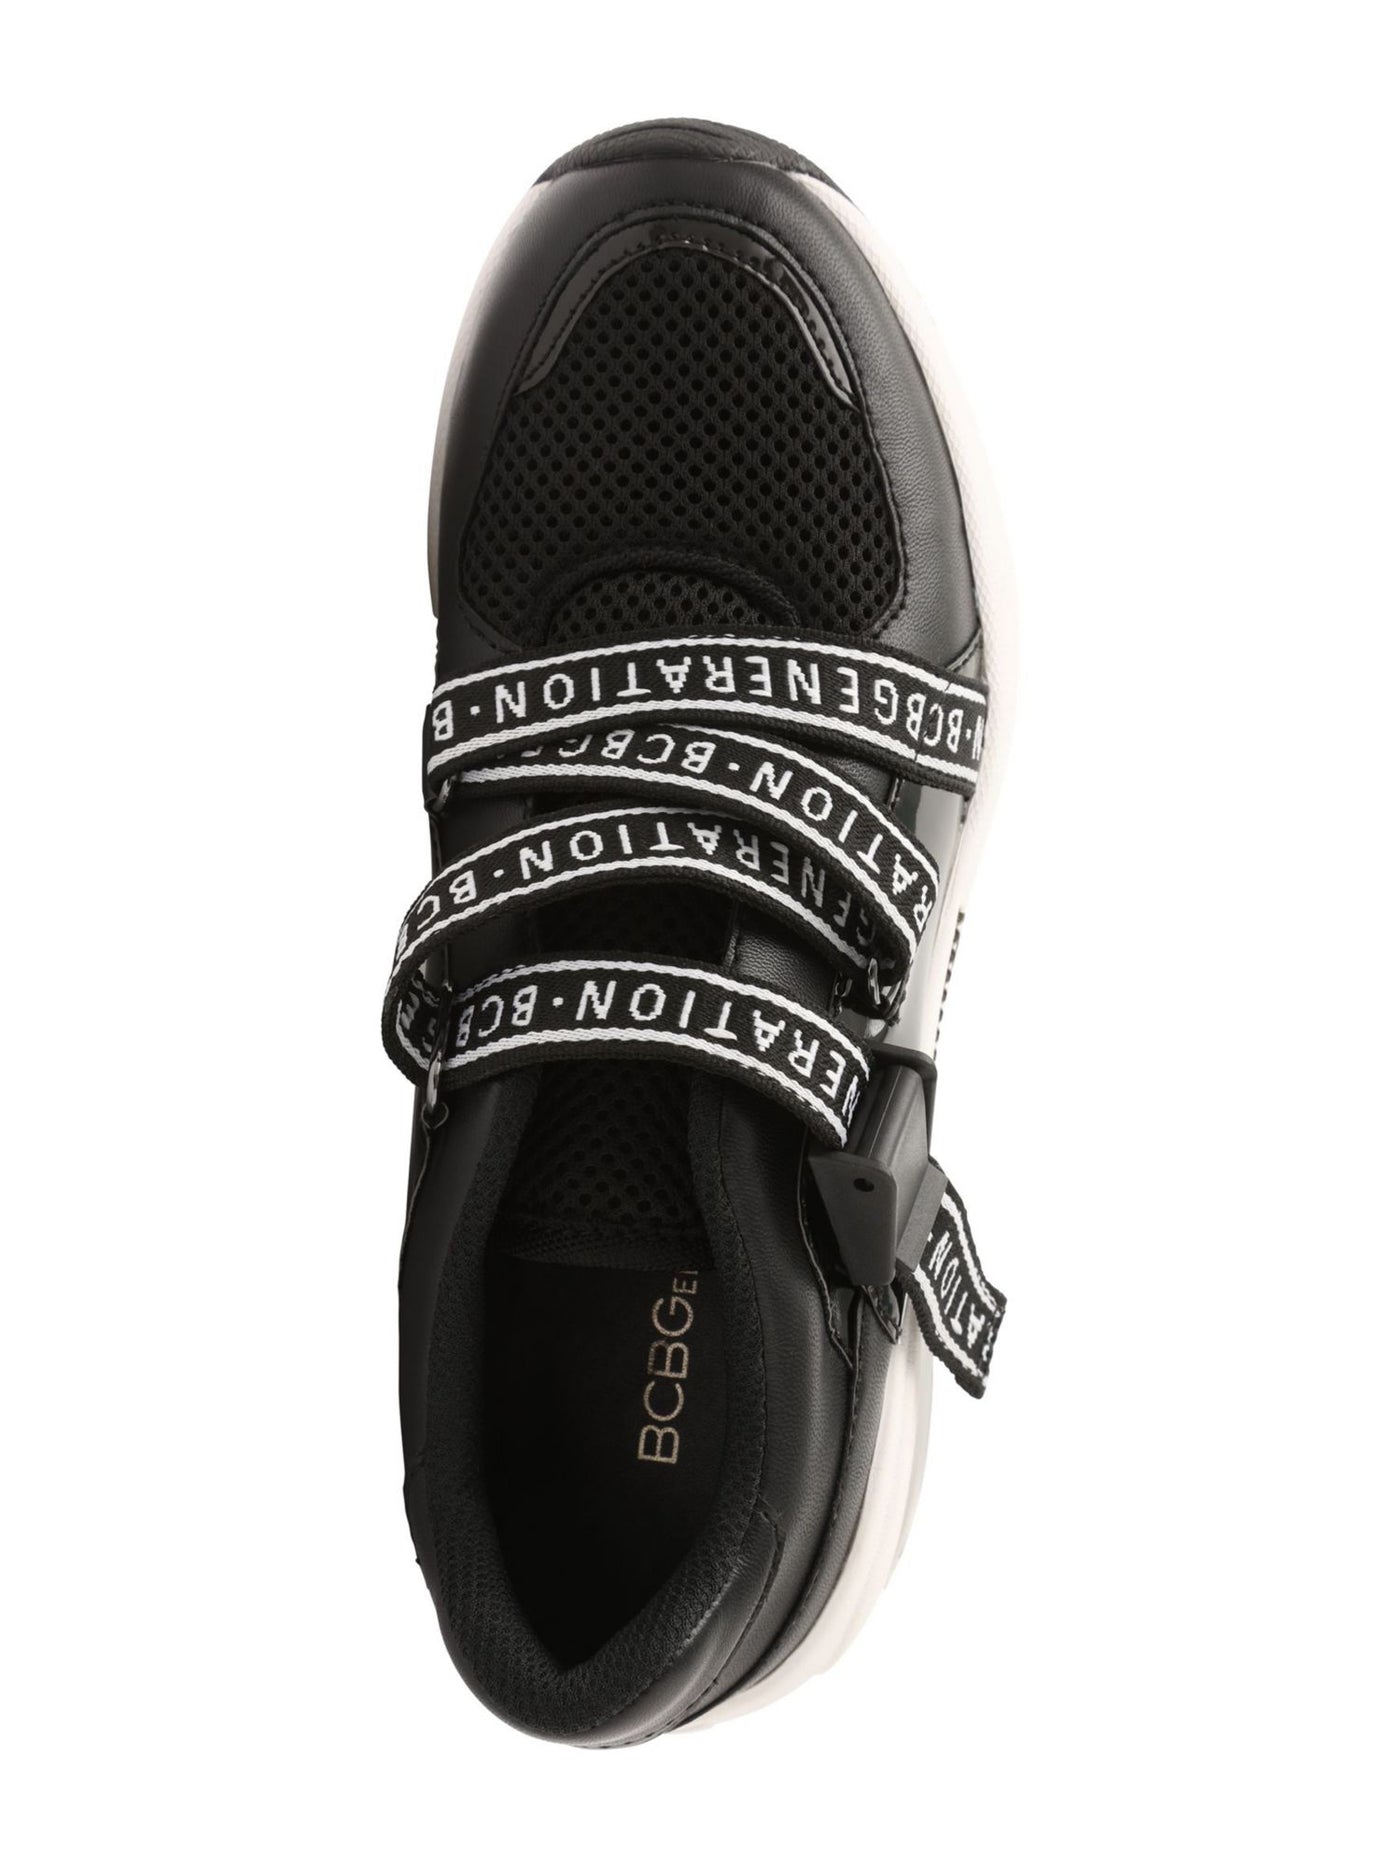 BCBGENERATION Womens Black 1 Platform Chain Hardware Logo Padded Willa Round Toe Wedge Slip On Athletic Training Shoes 7.5 M